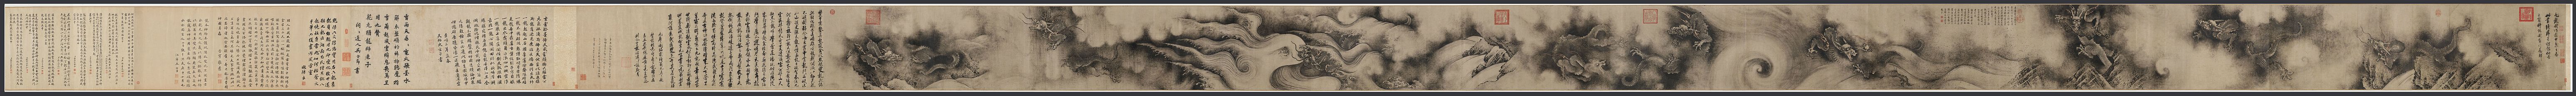 "Niodrakstavelrullen" (kinesiska: 九龍圖卷), makimono målad 1244 av kinesiska konstnären Chen Rong under Songdynastin. Bilden avbildar 9 stycken kinesiska drakar som huvudmotiv. Skrolla till höger för motiv.